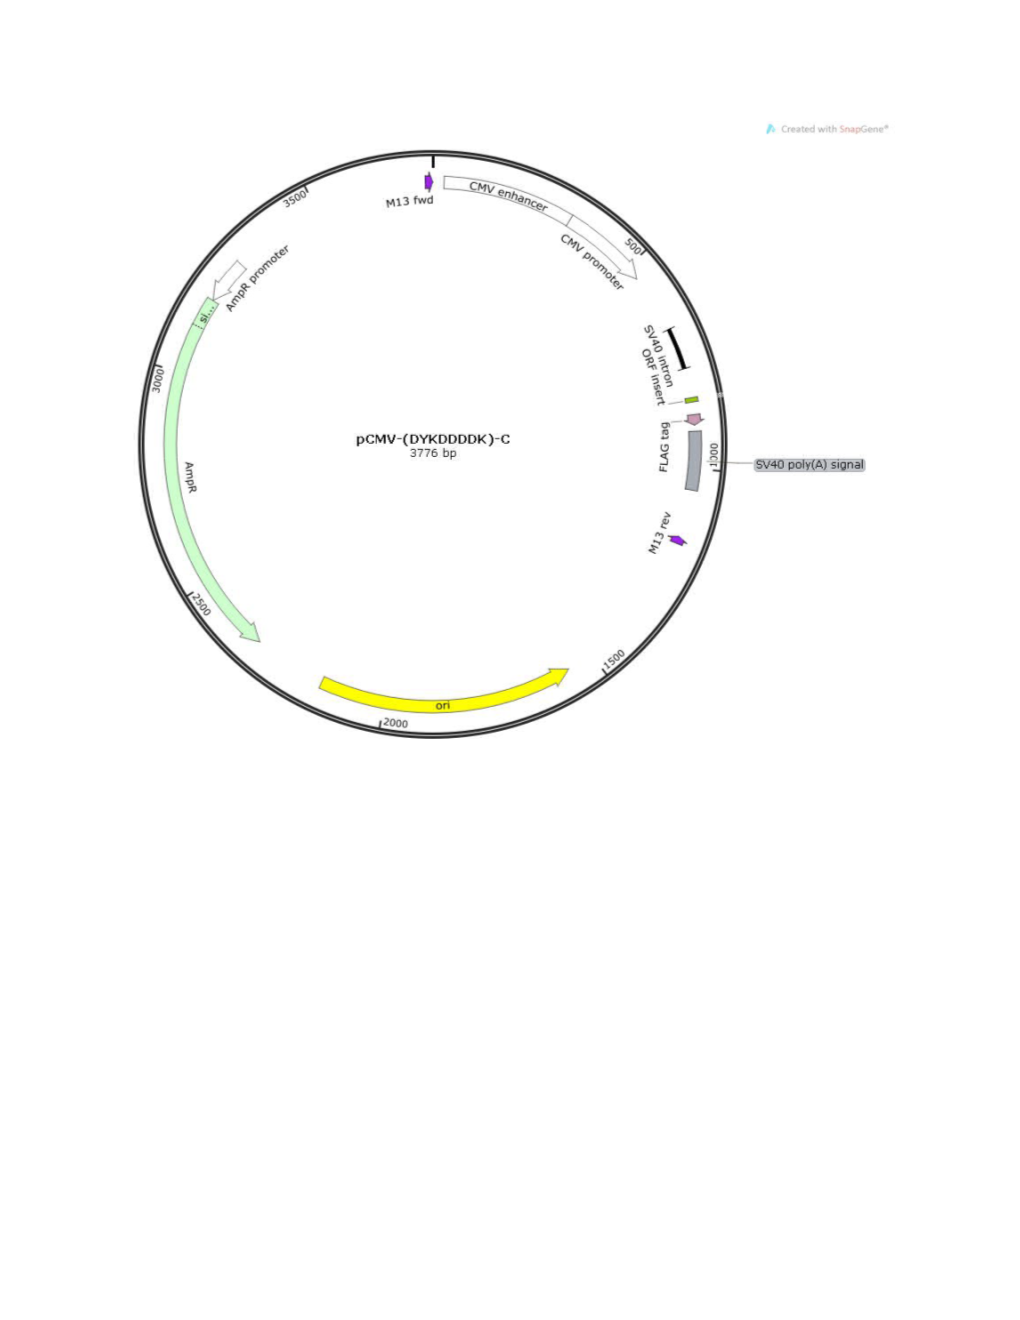 LOCUS Exported 3776 Bp Ds-DNA Circular SYN 12-JUN-2014